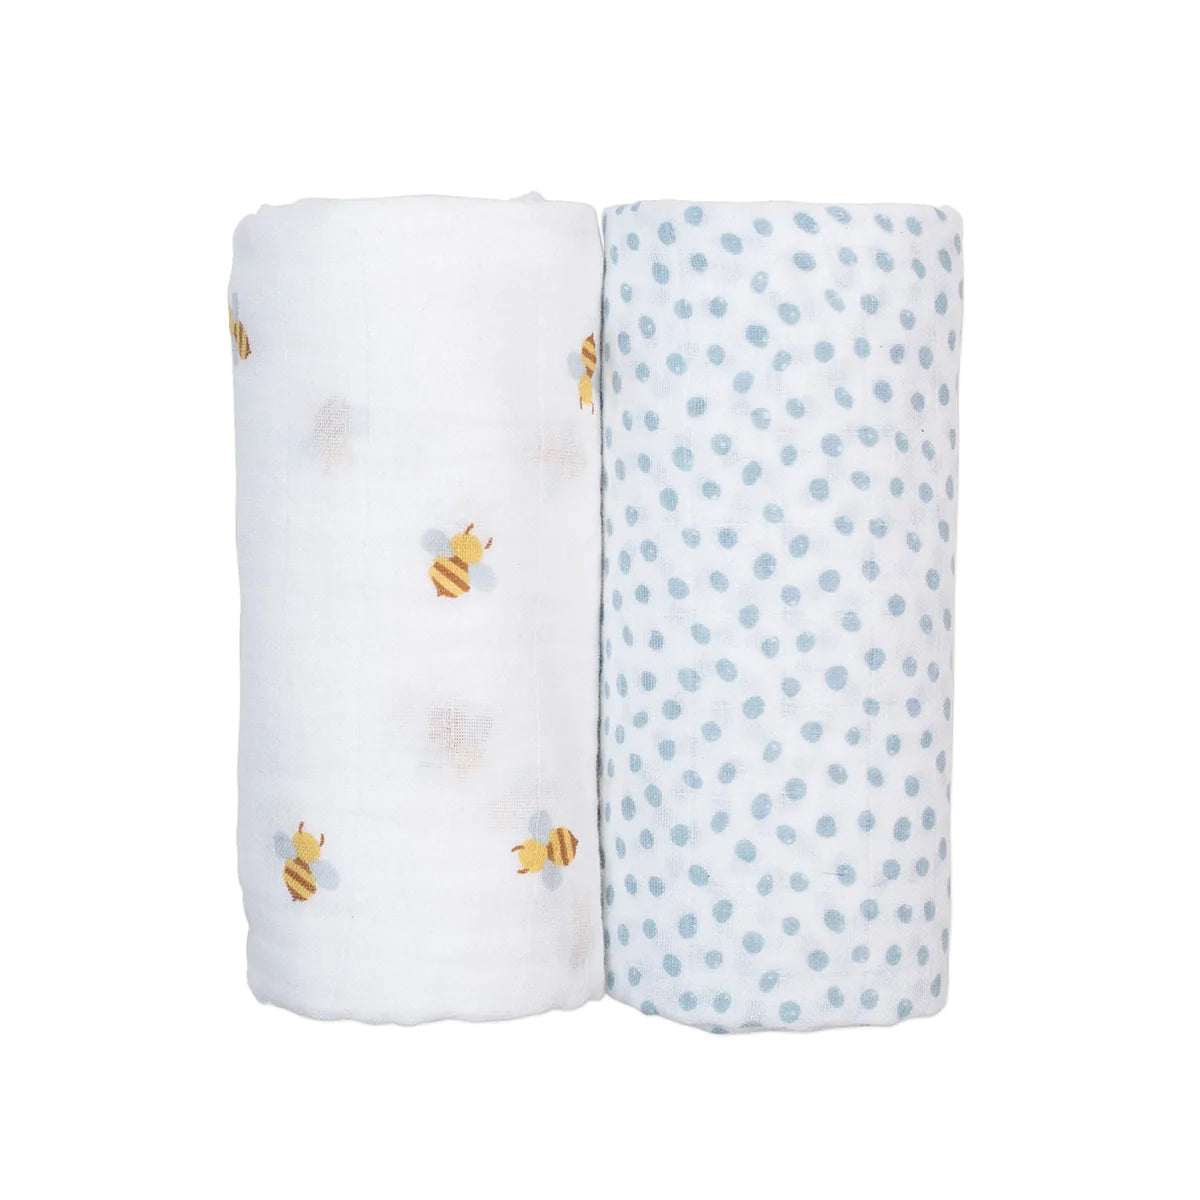 Lulujo Cotton Muslin Swaddle Blanket 2 PK - Bees & Dots